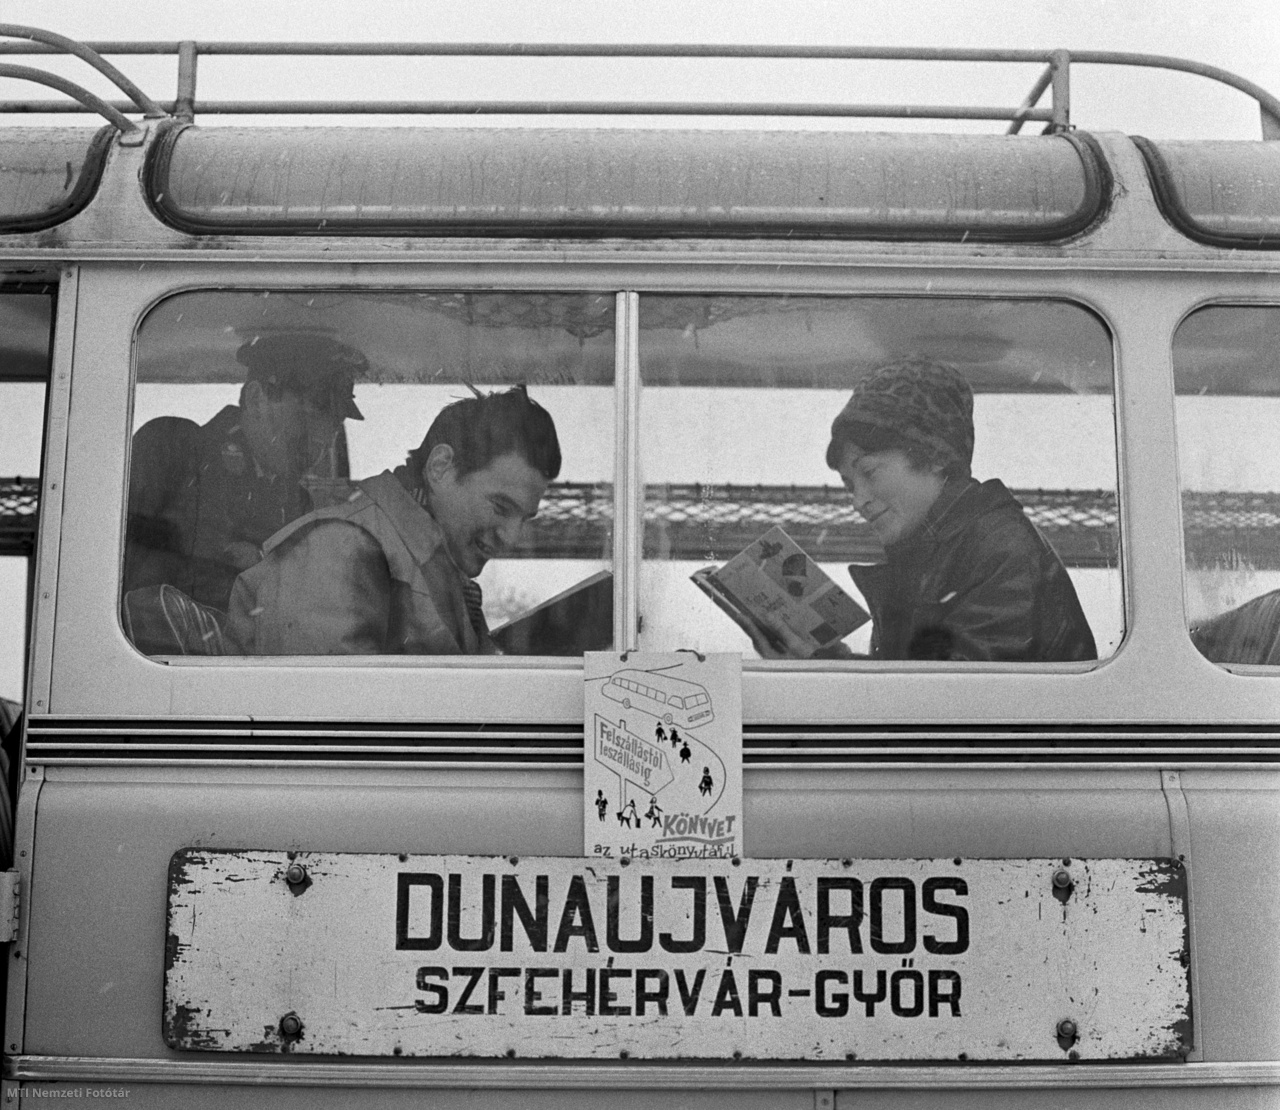 Dunaújváros, 1965. február 18. Utasok olvasnak a Magyar Államvasutak Közúti Gépkocsiüzeme (MÁVAUT) Dunaújváros- Székesfehérvár-Győr útvonalon közlekedő autóbuszán. A járaton utazás közben válogathatnak, olvashatnak a kísérleti utas könyvtár köteteiből, melyet úgy válogatták össze, hogy rövid írásműveket, kisregényeket, novellákat, verseket, karcolatokat tartalmazzanak. Az utasok 55 könyv közül kölcsönözhetnek az utazás idejére. Már az első napon nagy forgalma volt az autóbuszkönyvtárnak, amely ha beválik, akkor a szolgáltatást kezdeményező Fejér megyei Vörösmarty Könyvtár más távolsági járaton is rendszeresíti majd a könyvkölcsönzést.